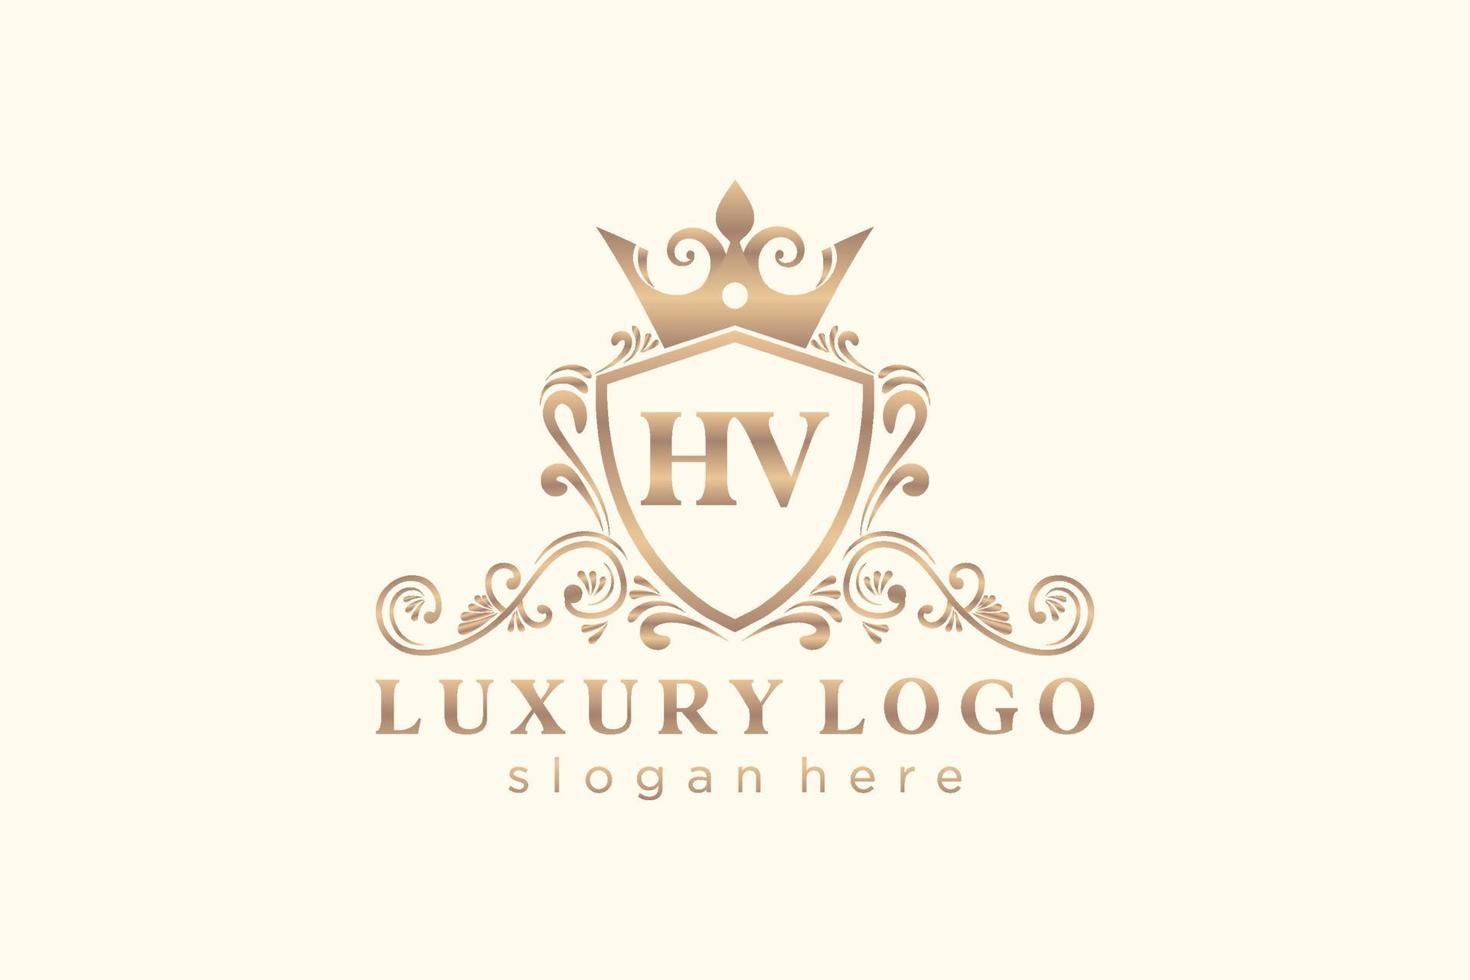 Anfangs-HV-Buchstabe Royal Luxury Logo-Vorlage in Vektorgrafiken für Restaurant, Lizenzgebühren, Boutique, Café, Hotel, Heraldik, Schmuck, Mode und andere Vektorillustrationen. vektor